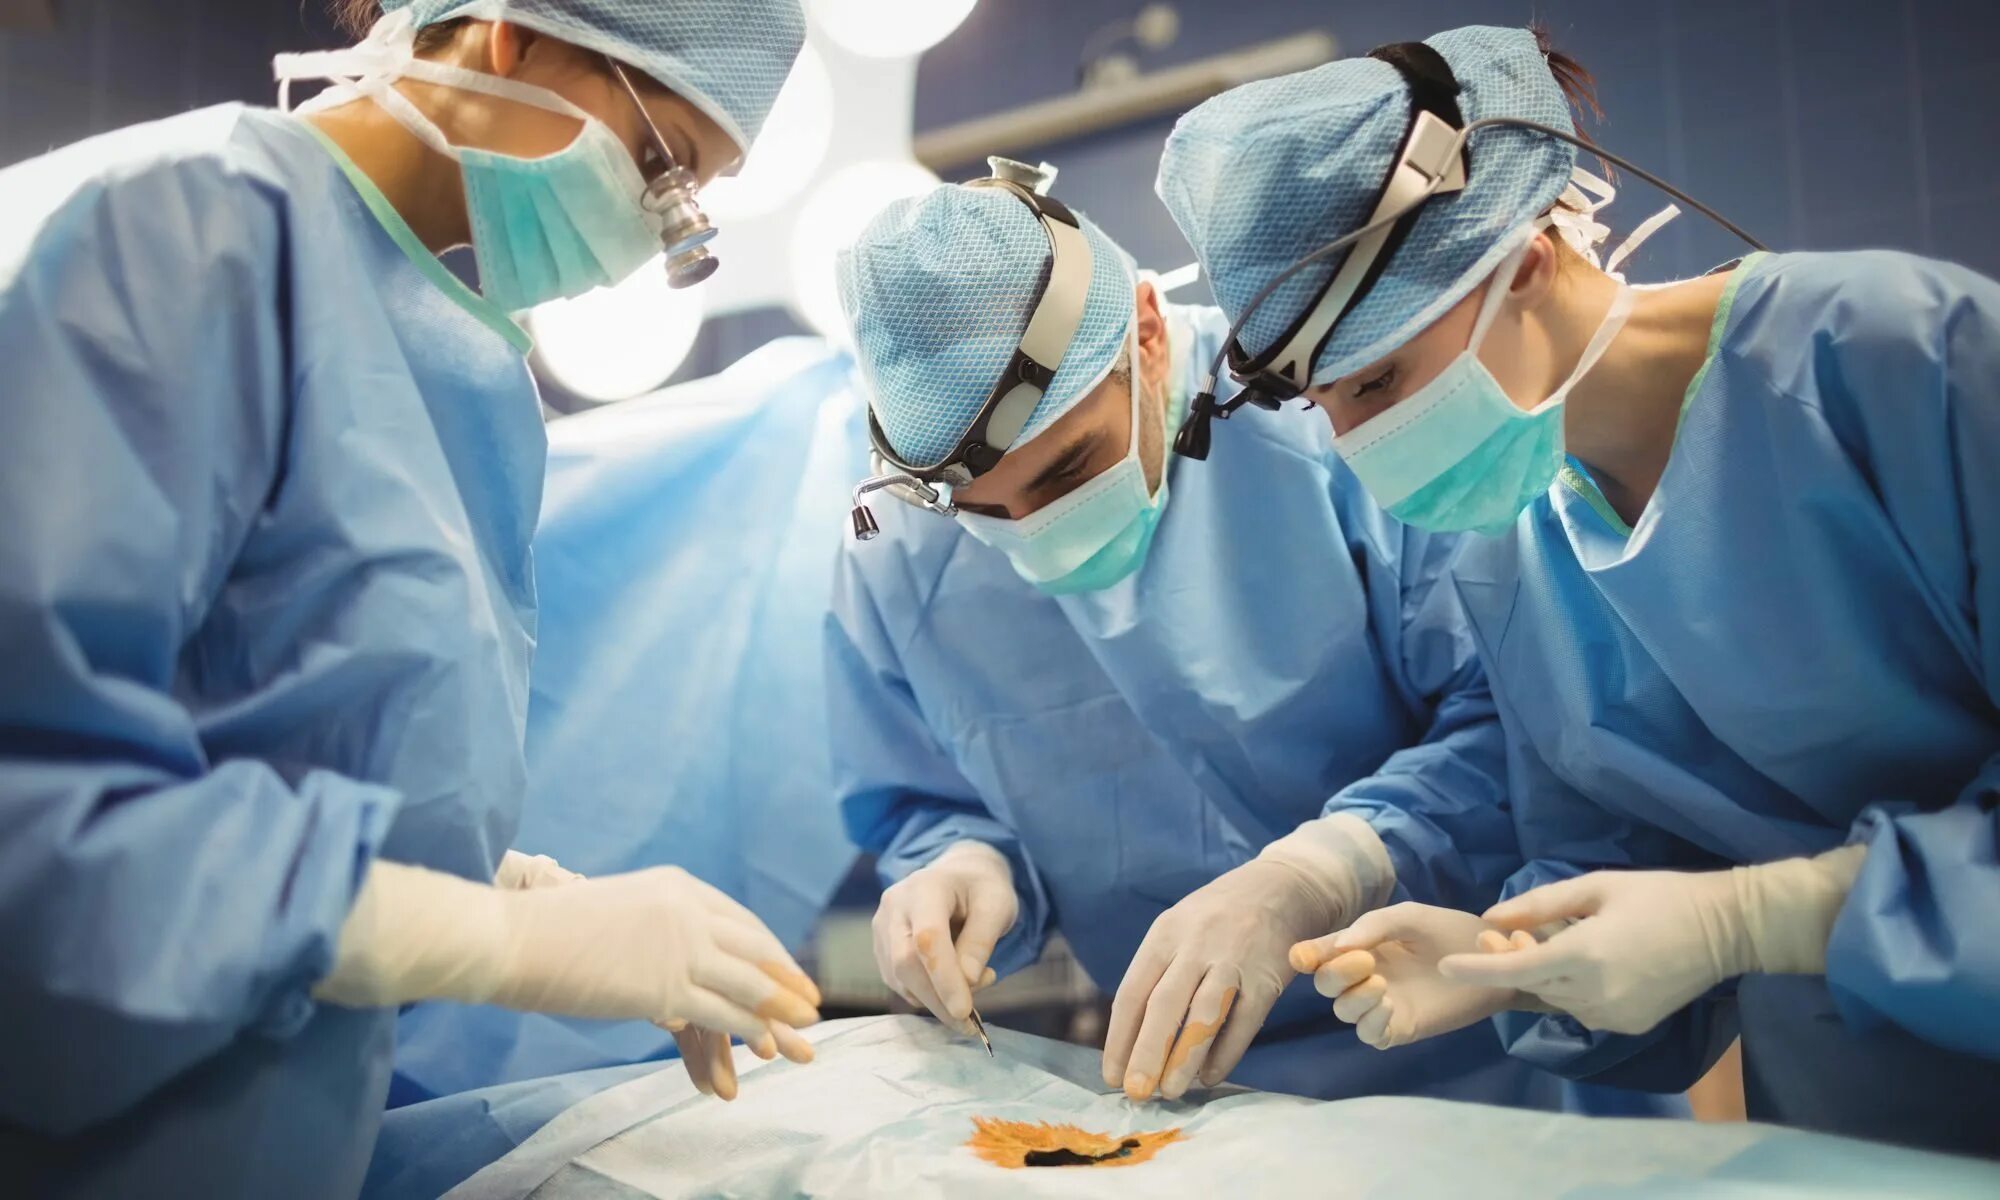 Хирургическая операция. Одежда хирургов в операционной. Операция в операционной. Одежда хирурга на операции.